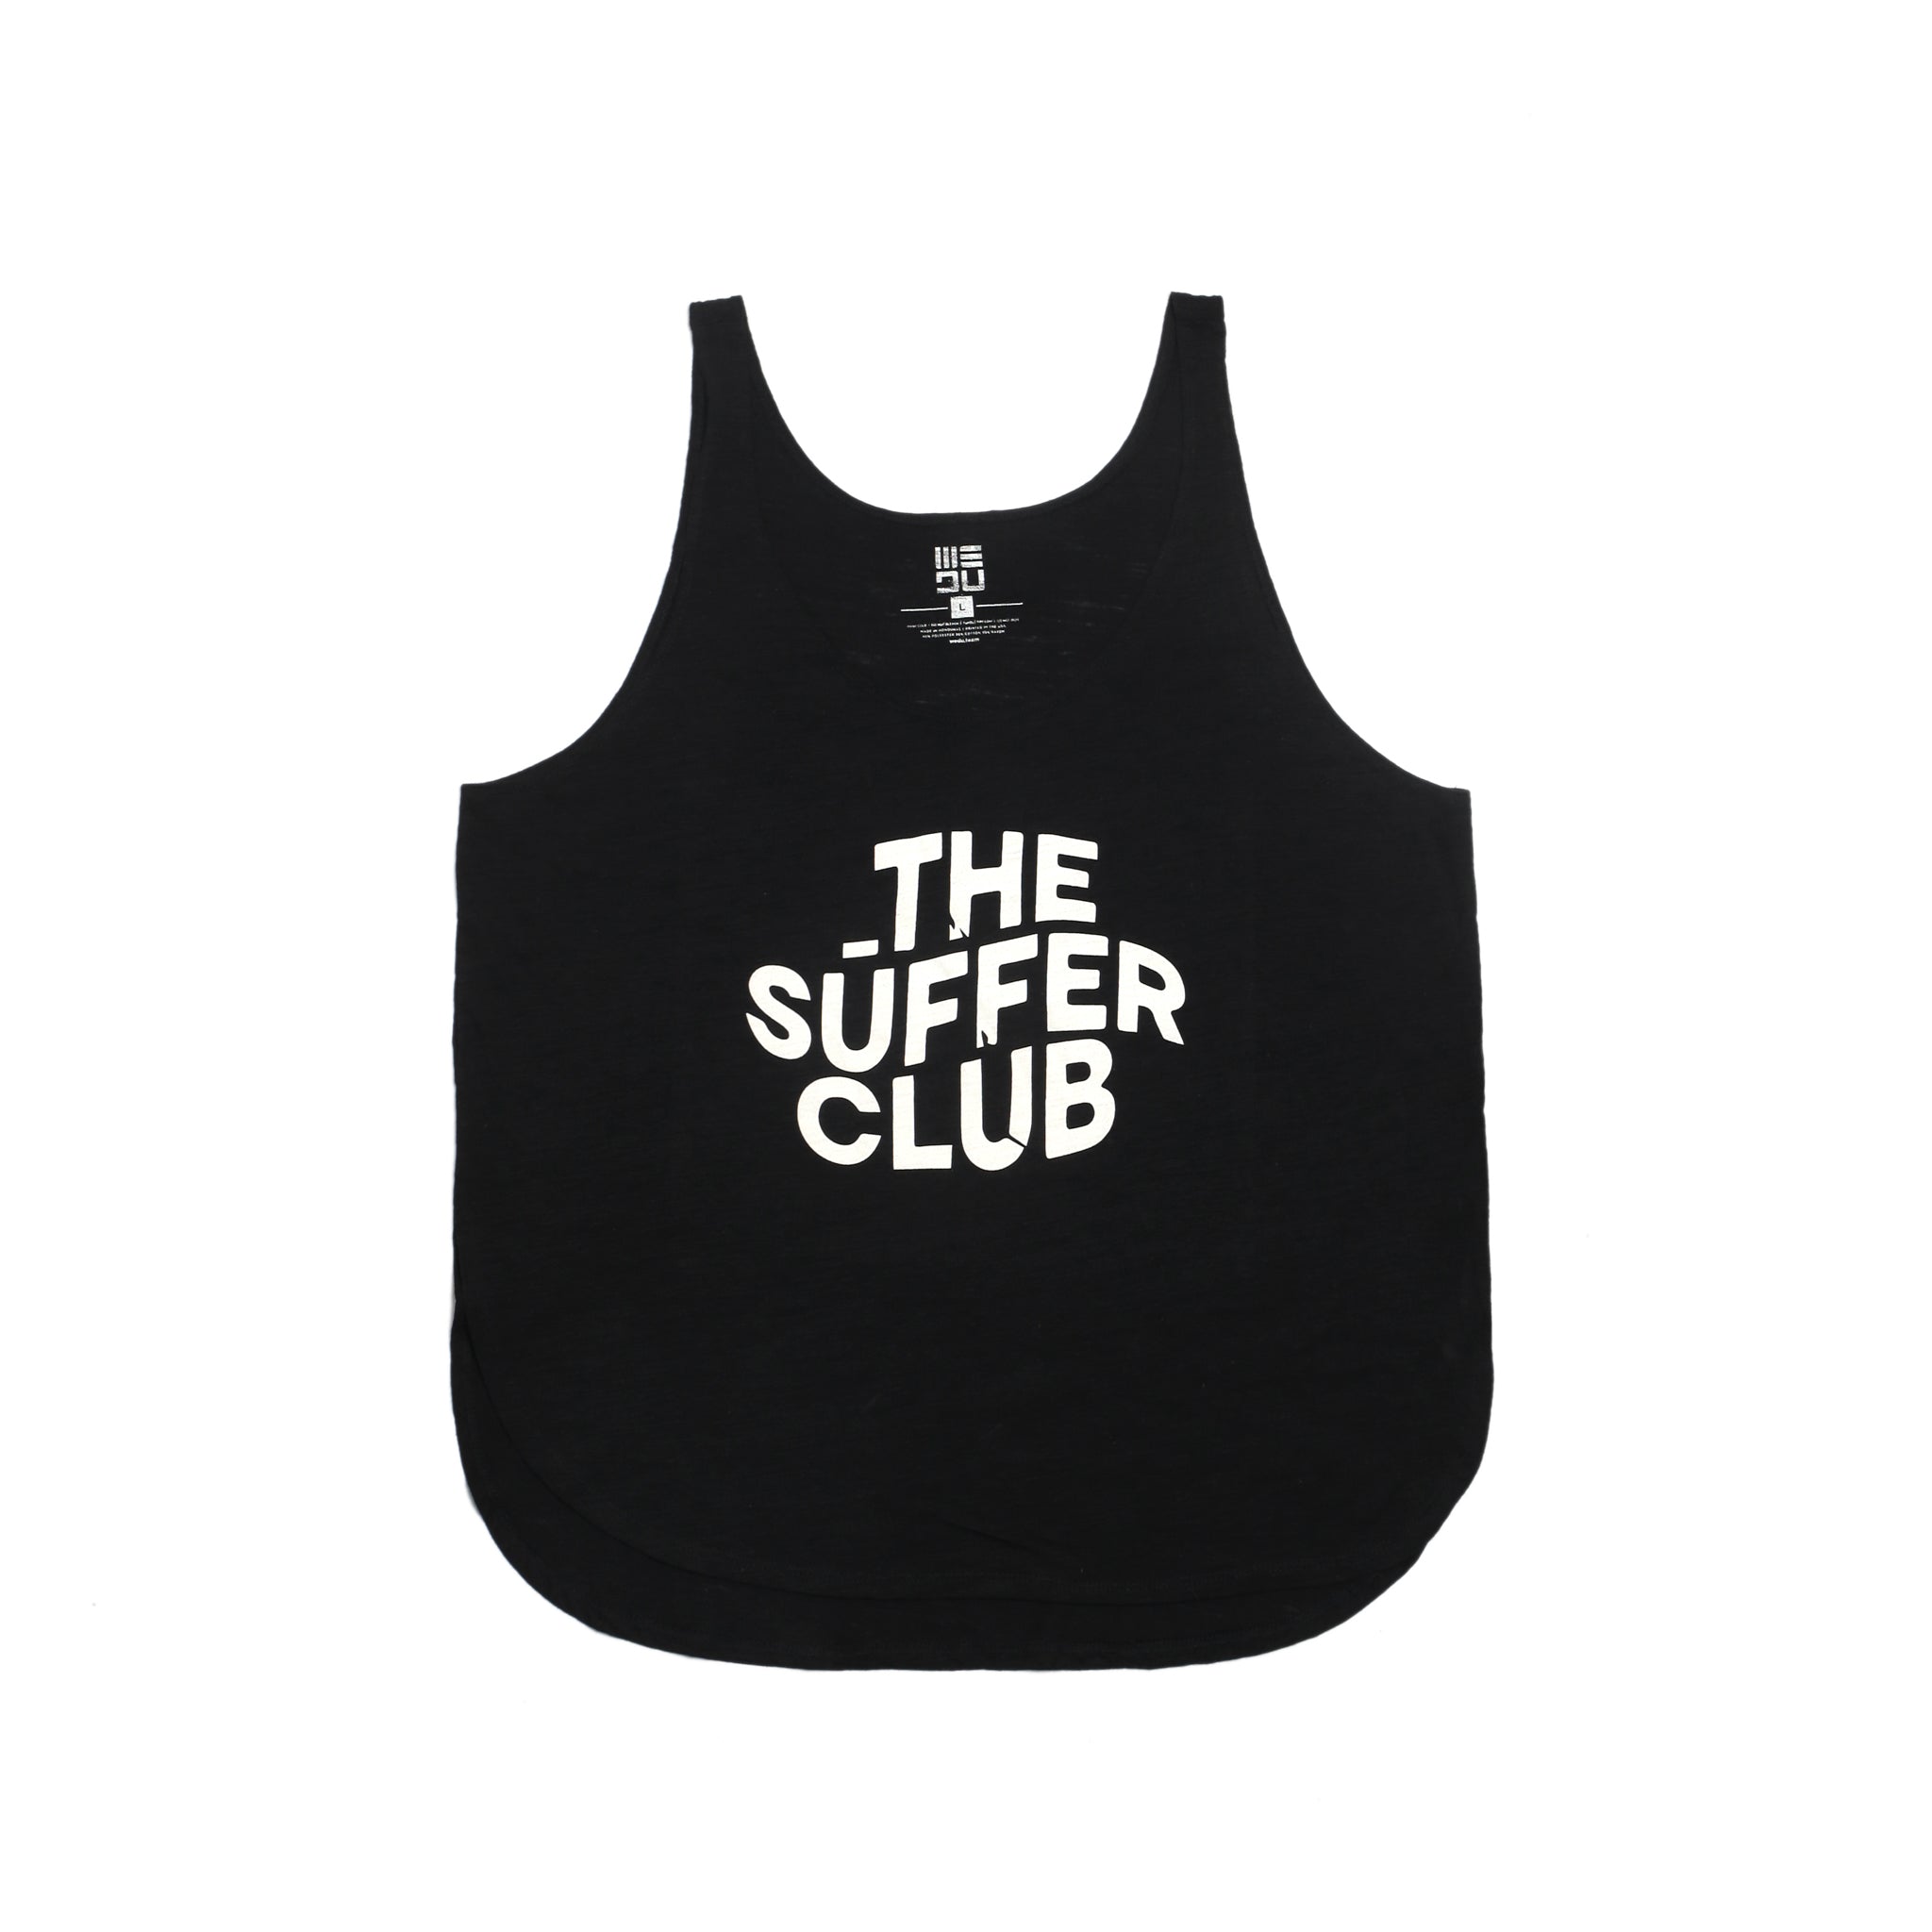 THE SŪFFER CLUB Tank Top